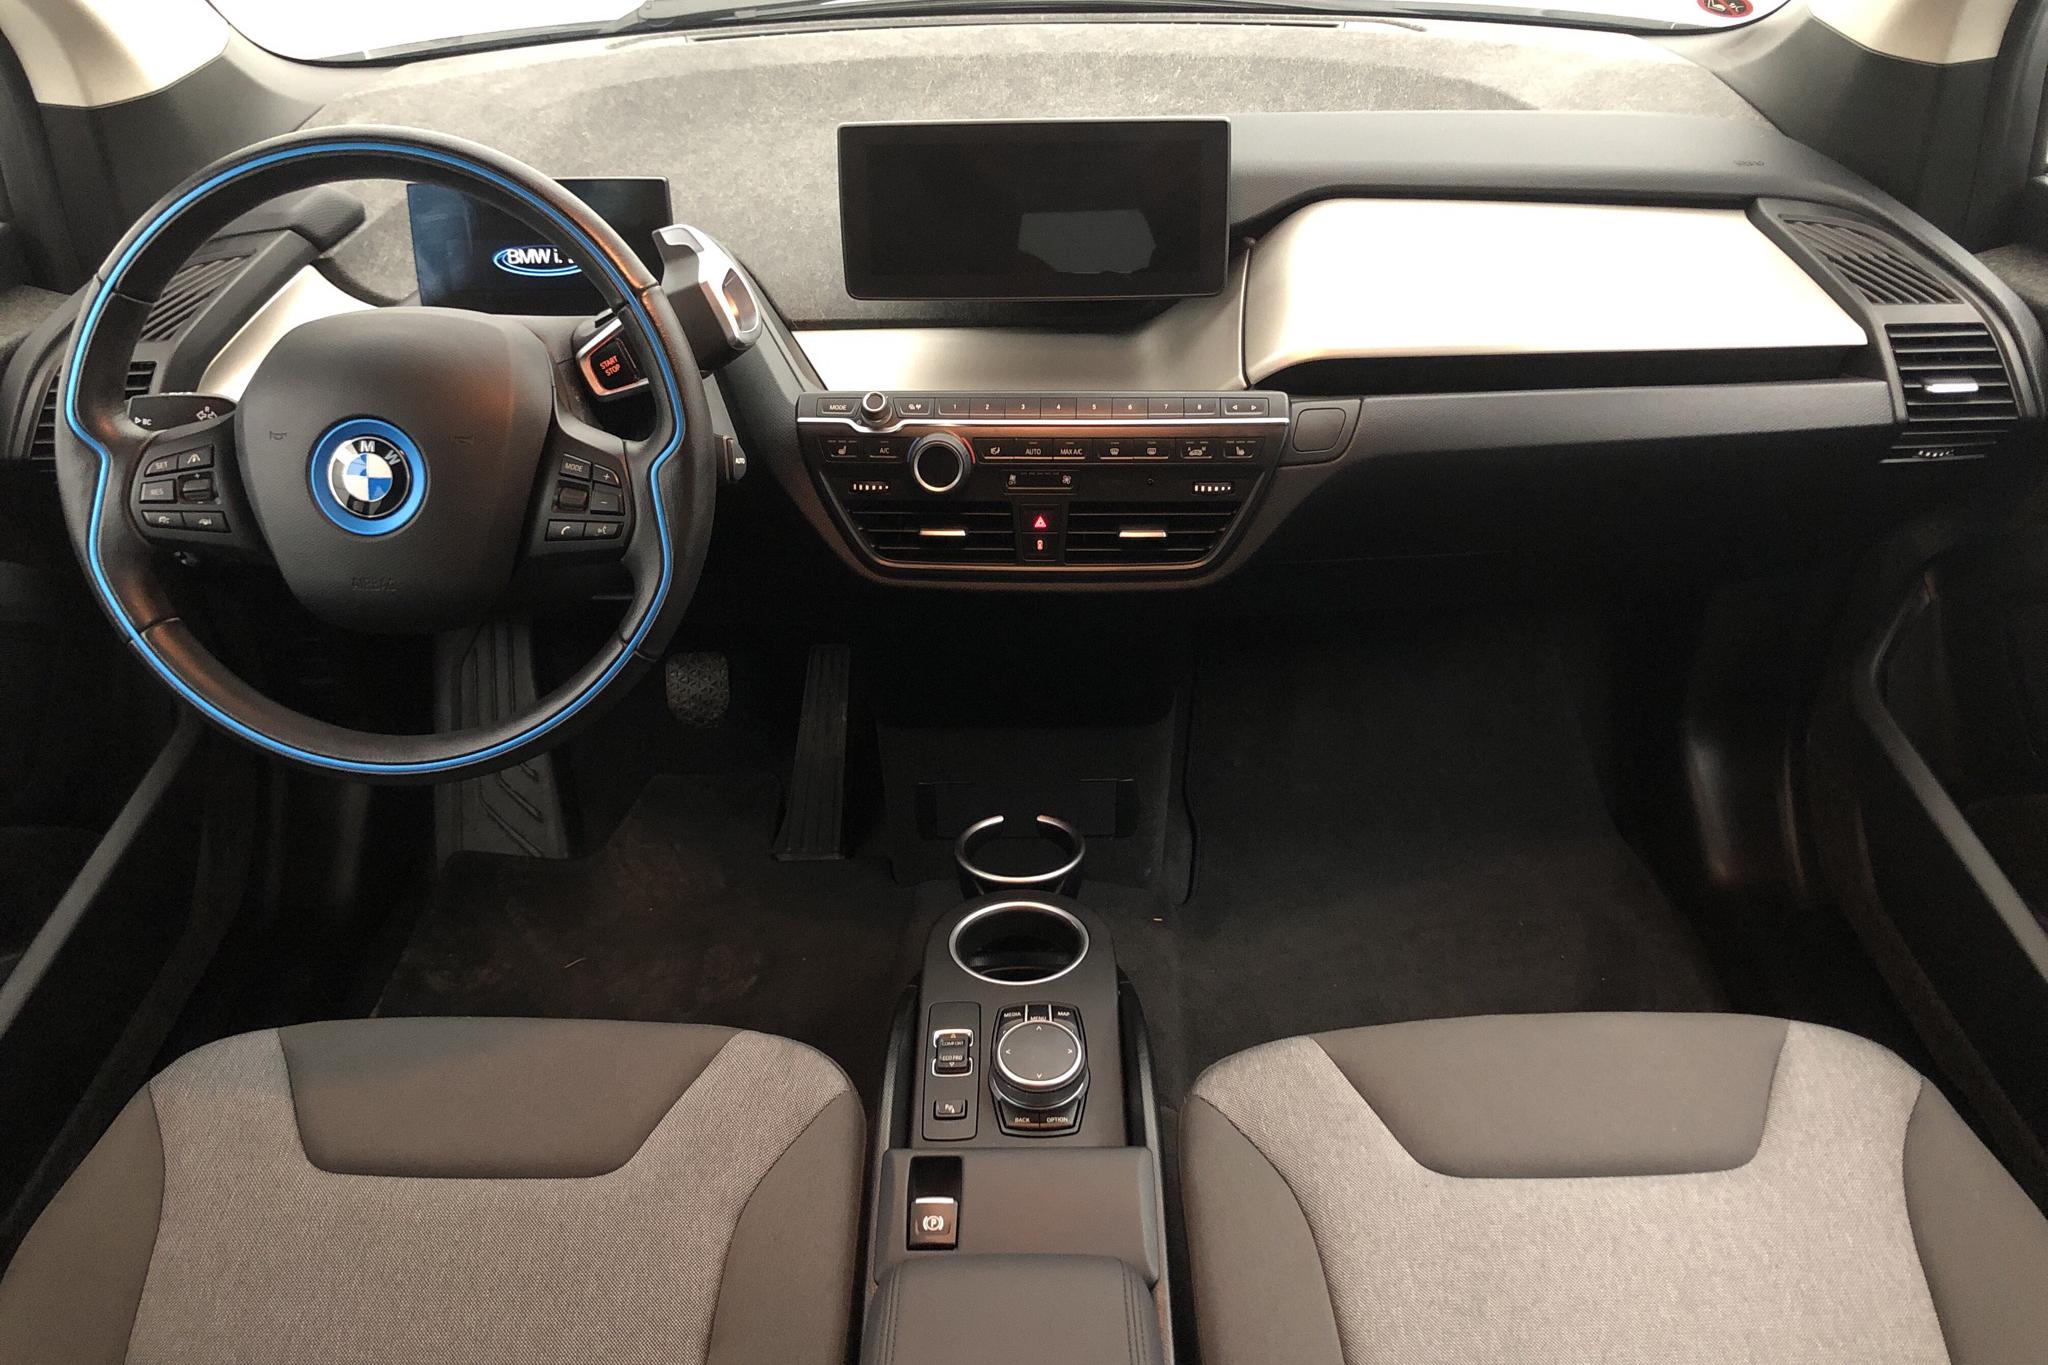 BMW i3 120Ah, I01 (170hk) - 28 300 km - Automatic - blue - 2019